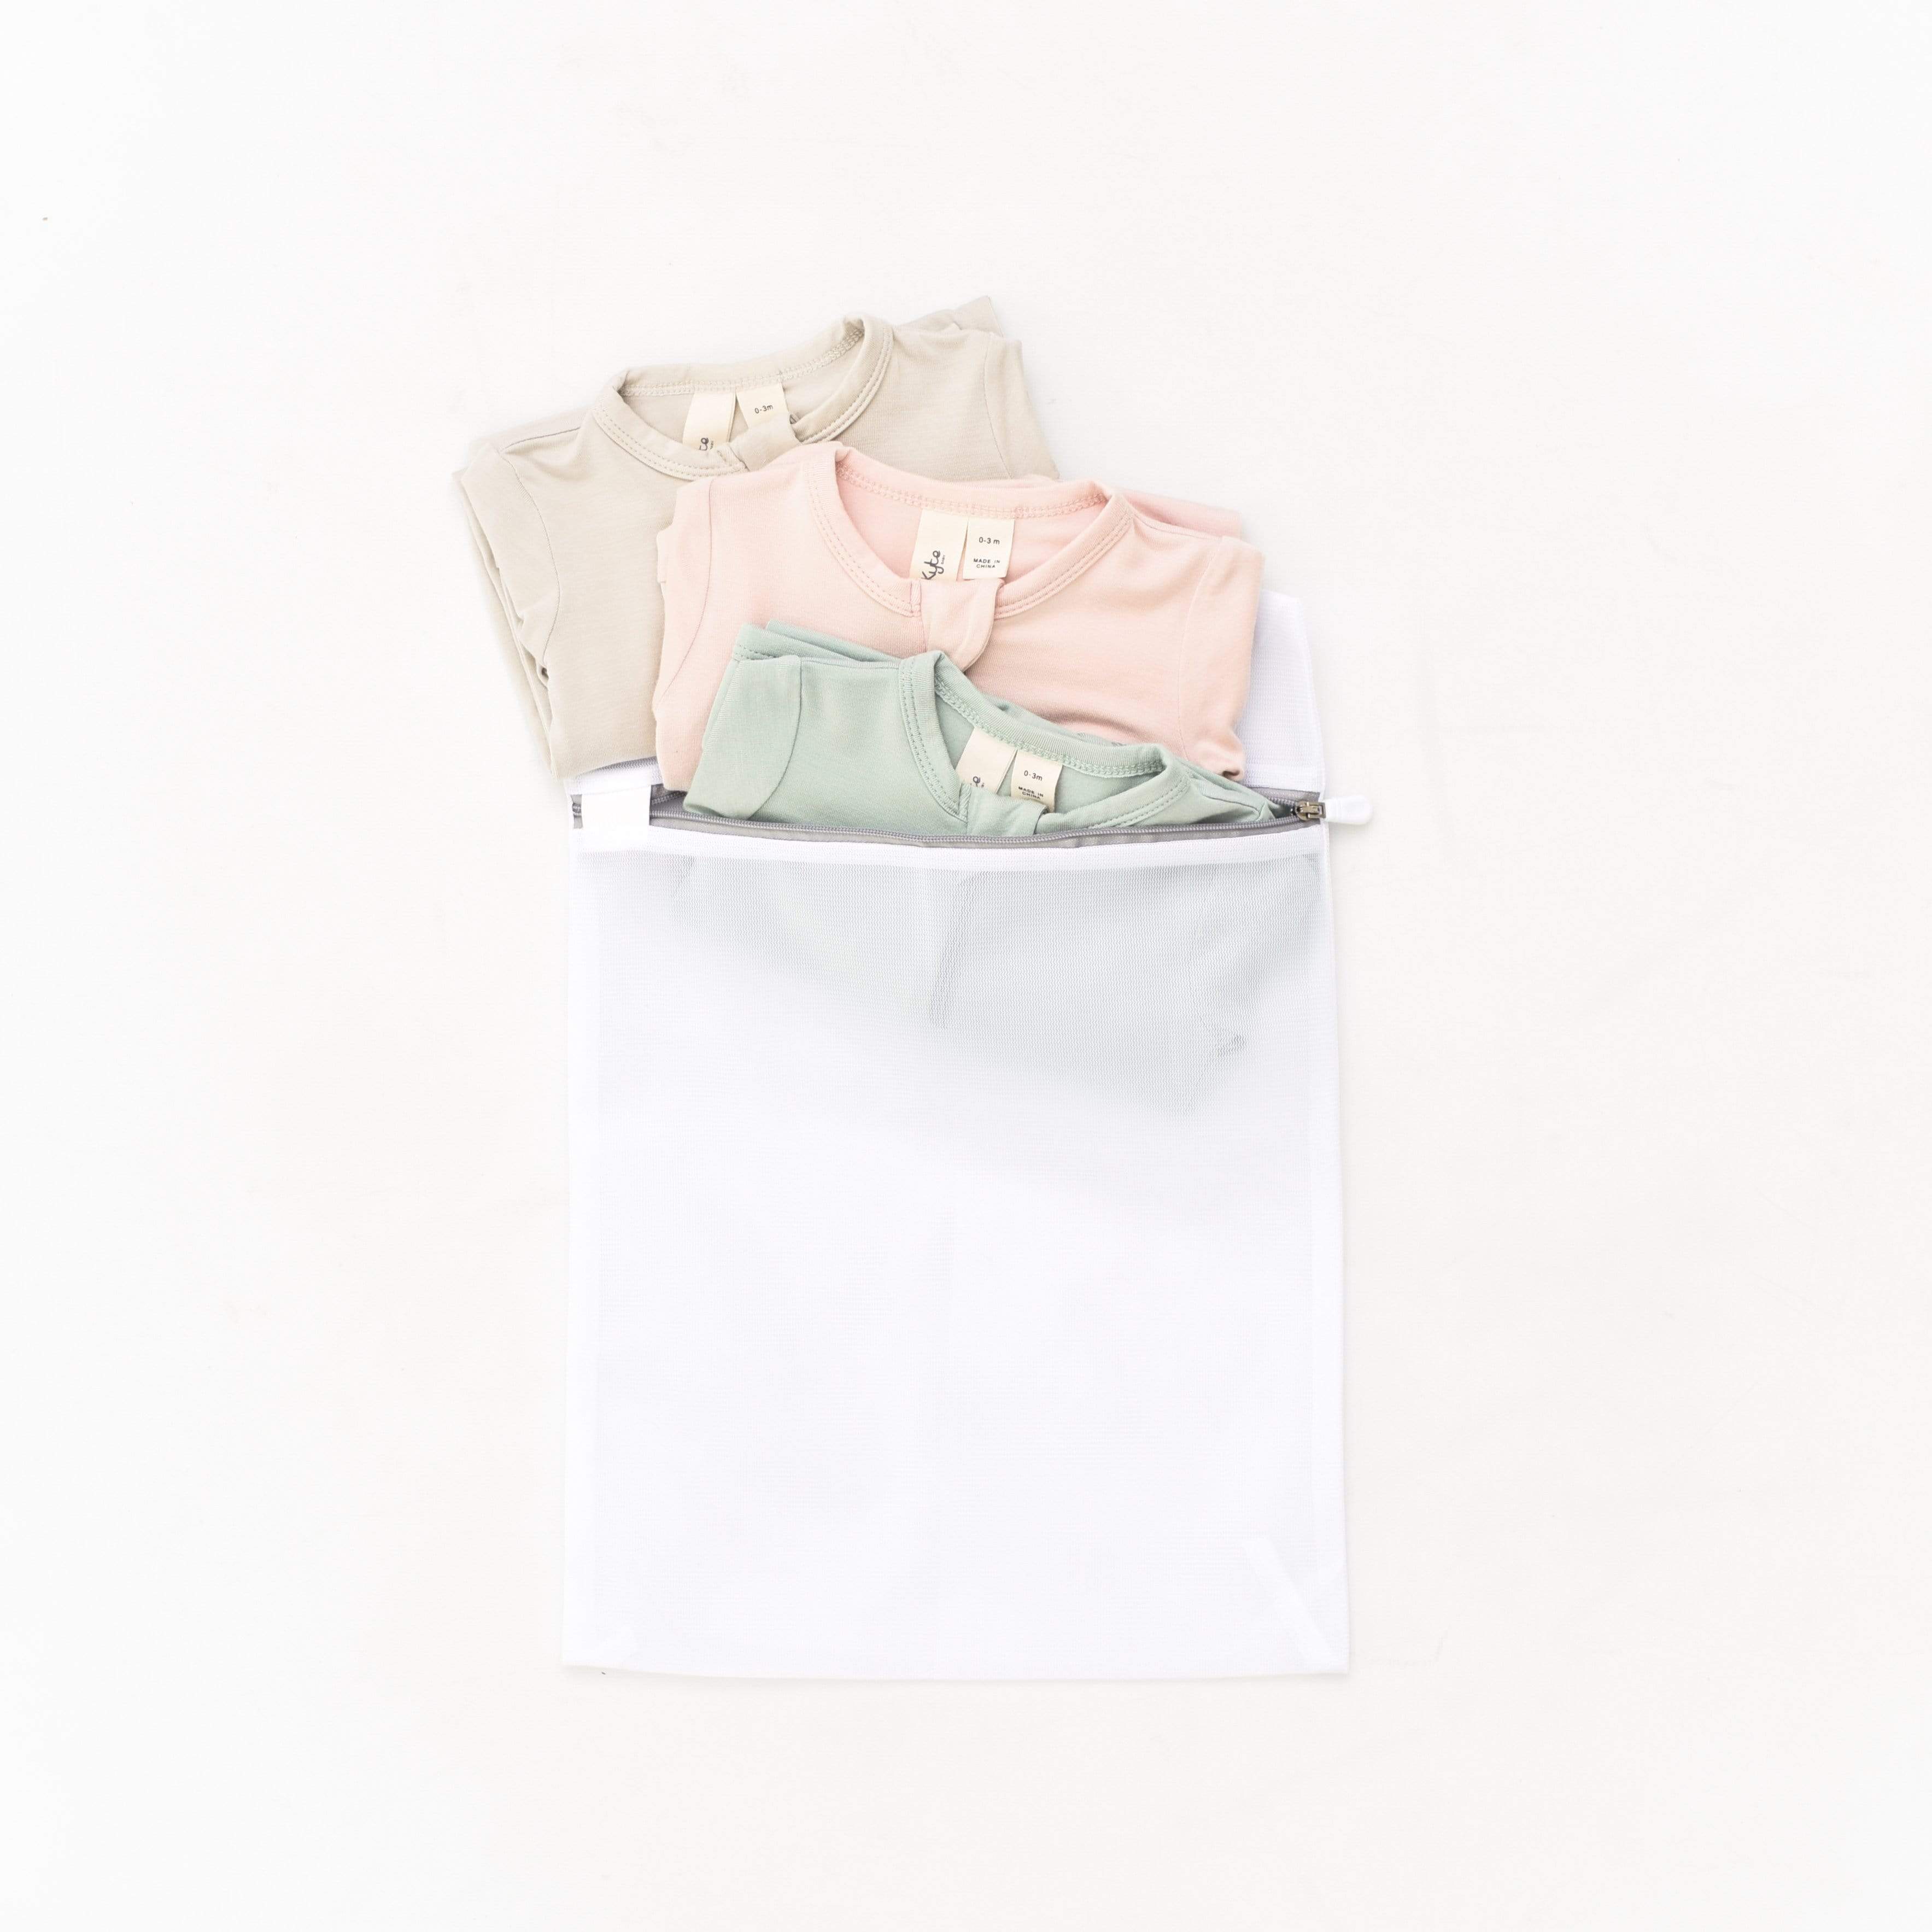 Mesh Laundry Bags (2-piece set)